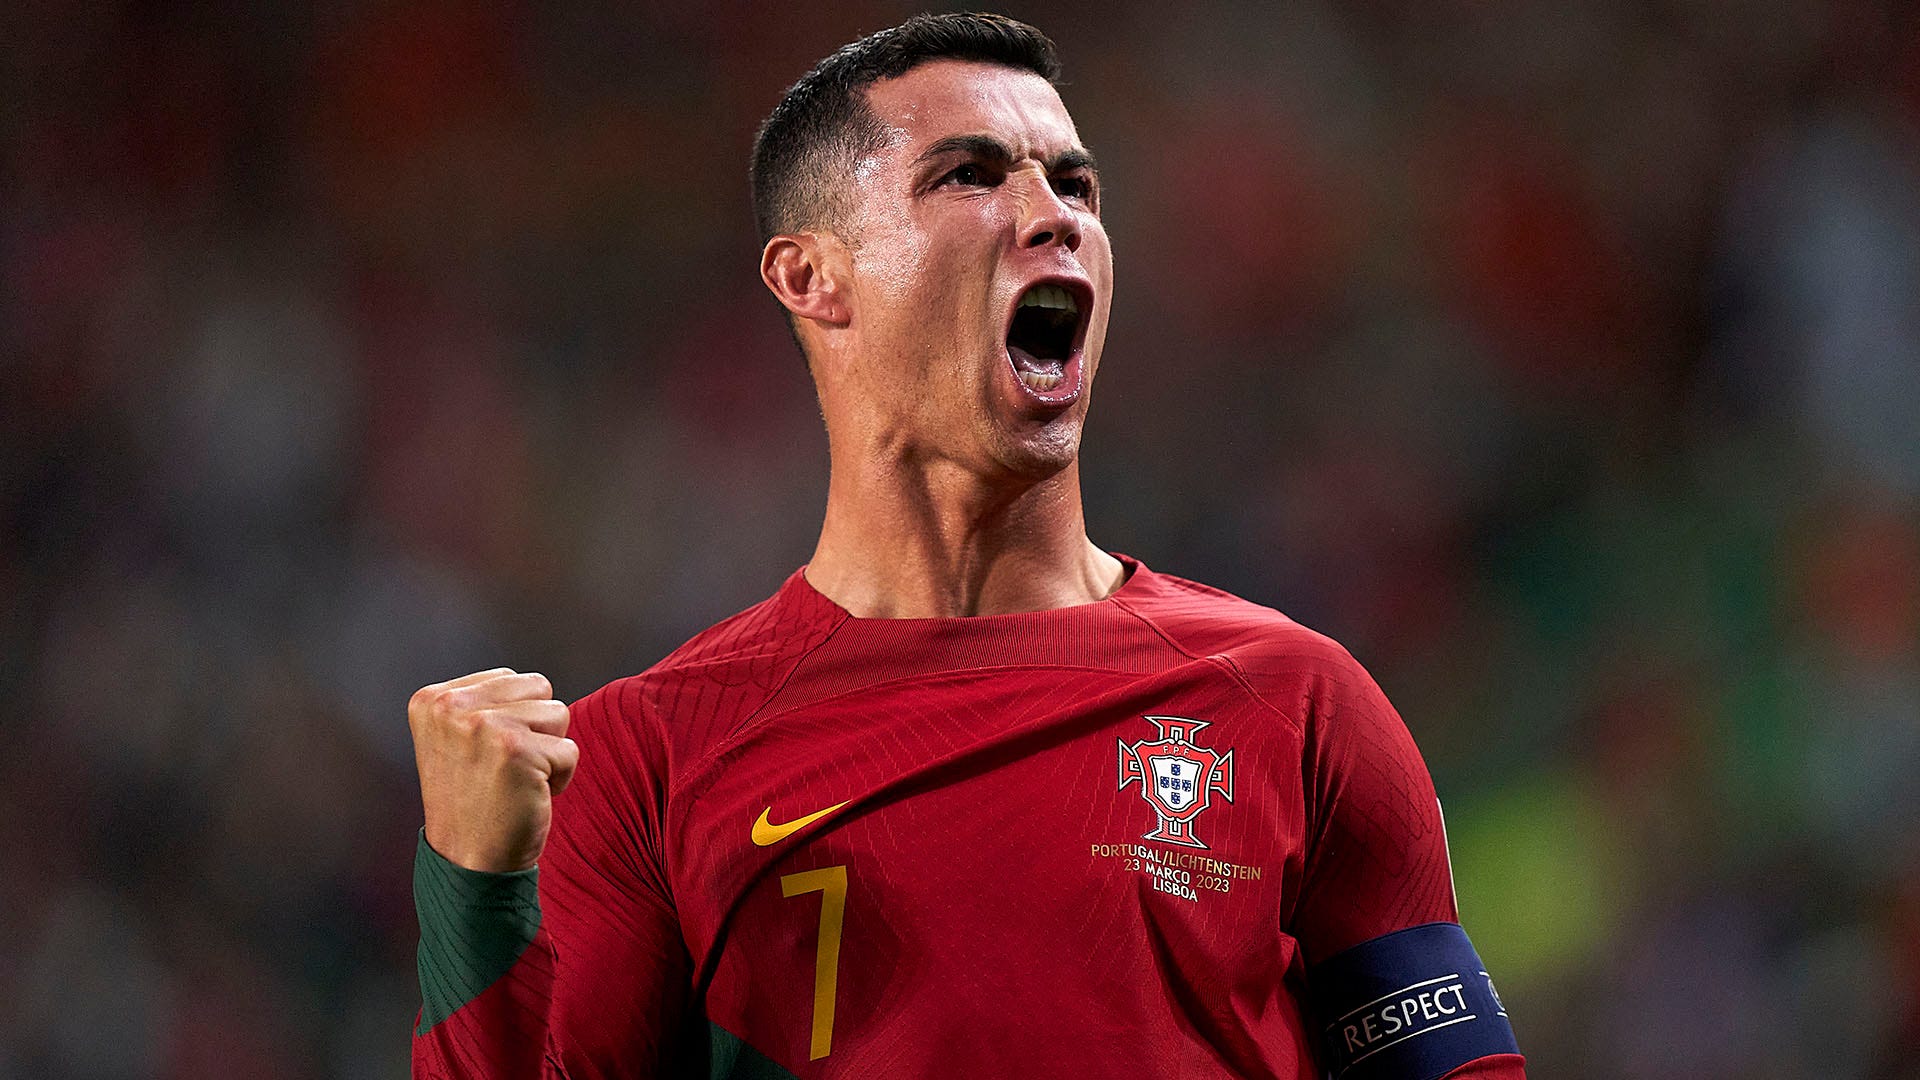 Cristiano Ronaldo thiết lập nên kỷ lục mới trong sự nghiệp | Bóng đá | Vietnam+ (VietnamPlus)